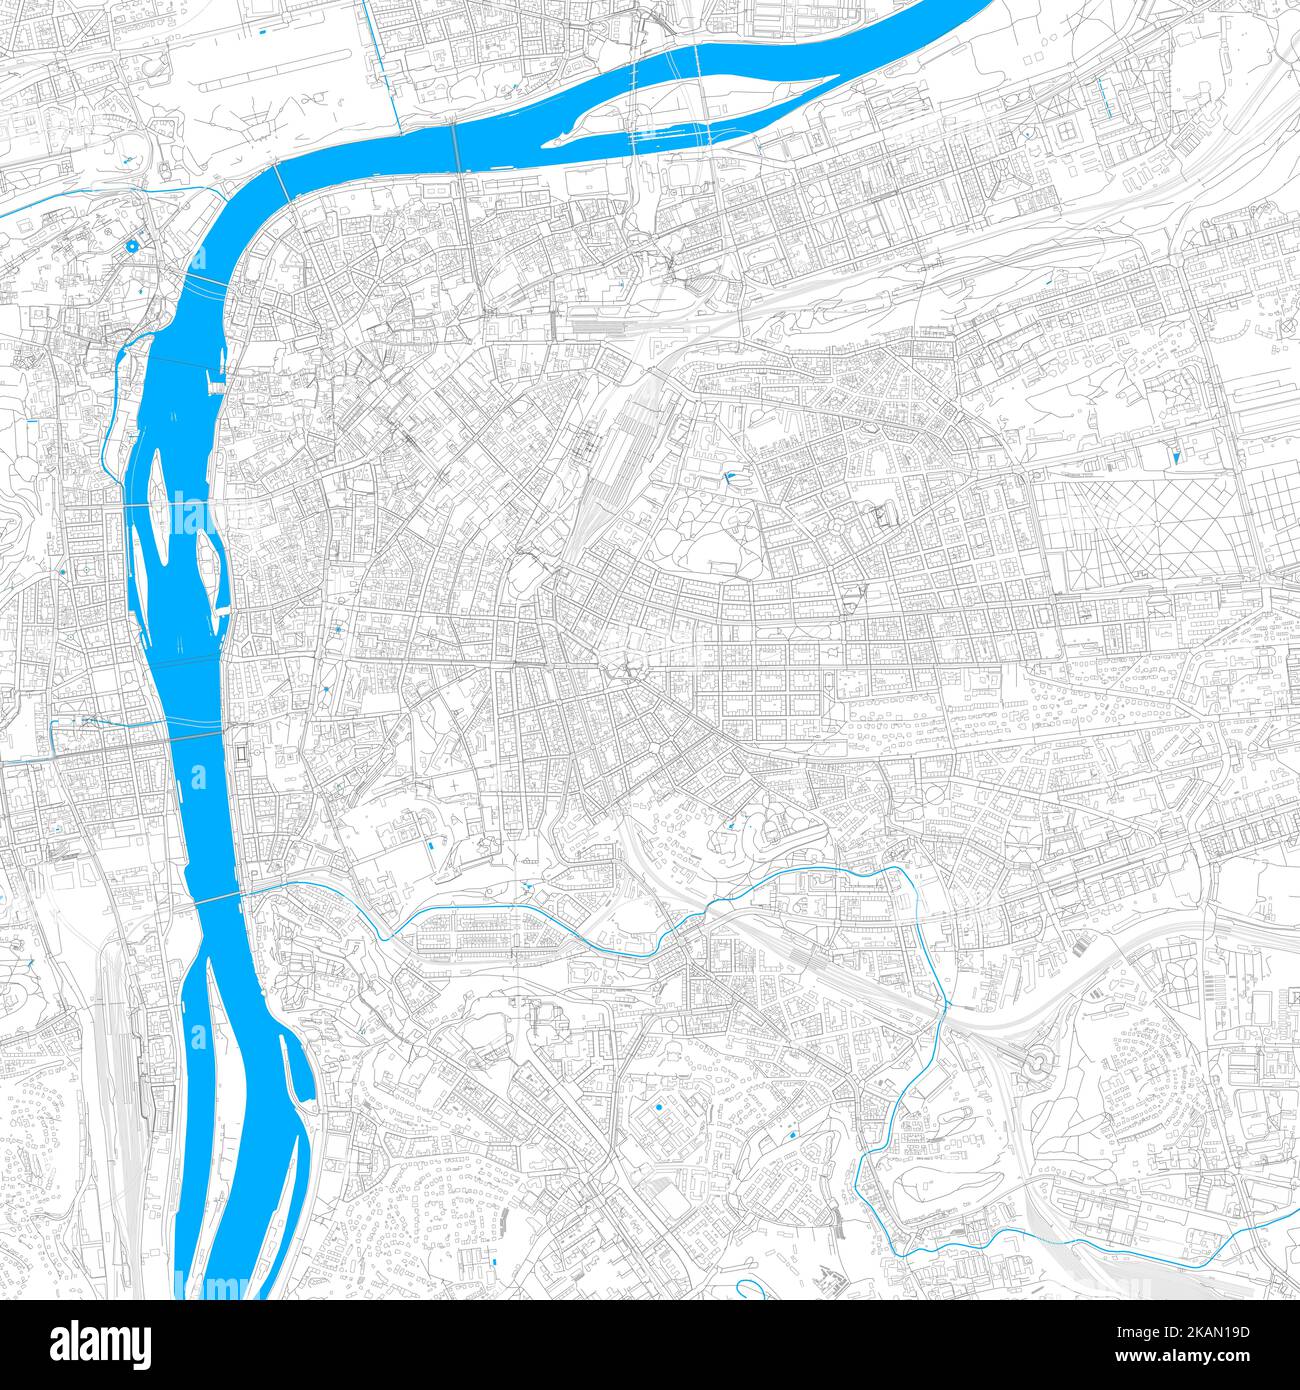 Prag, Prag, Tschechien hochauflösende Vektorkarte mit editierbaren Pfaden. Helle Umrisse für Hauptstraßen. Verwenden Sie es für jeden gedruckten und digitalen Hintergrund. Stock Vektor